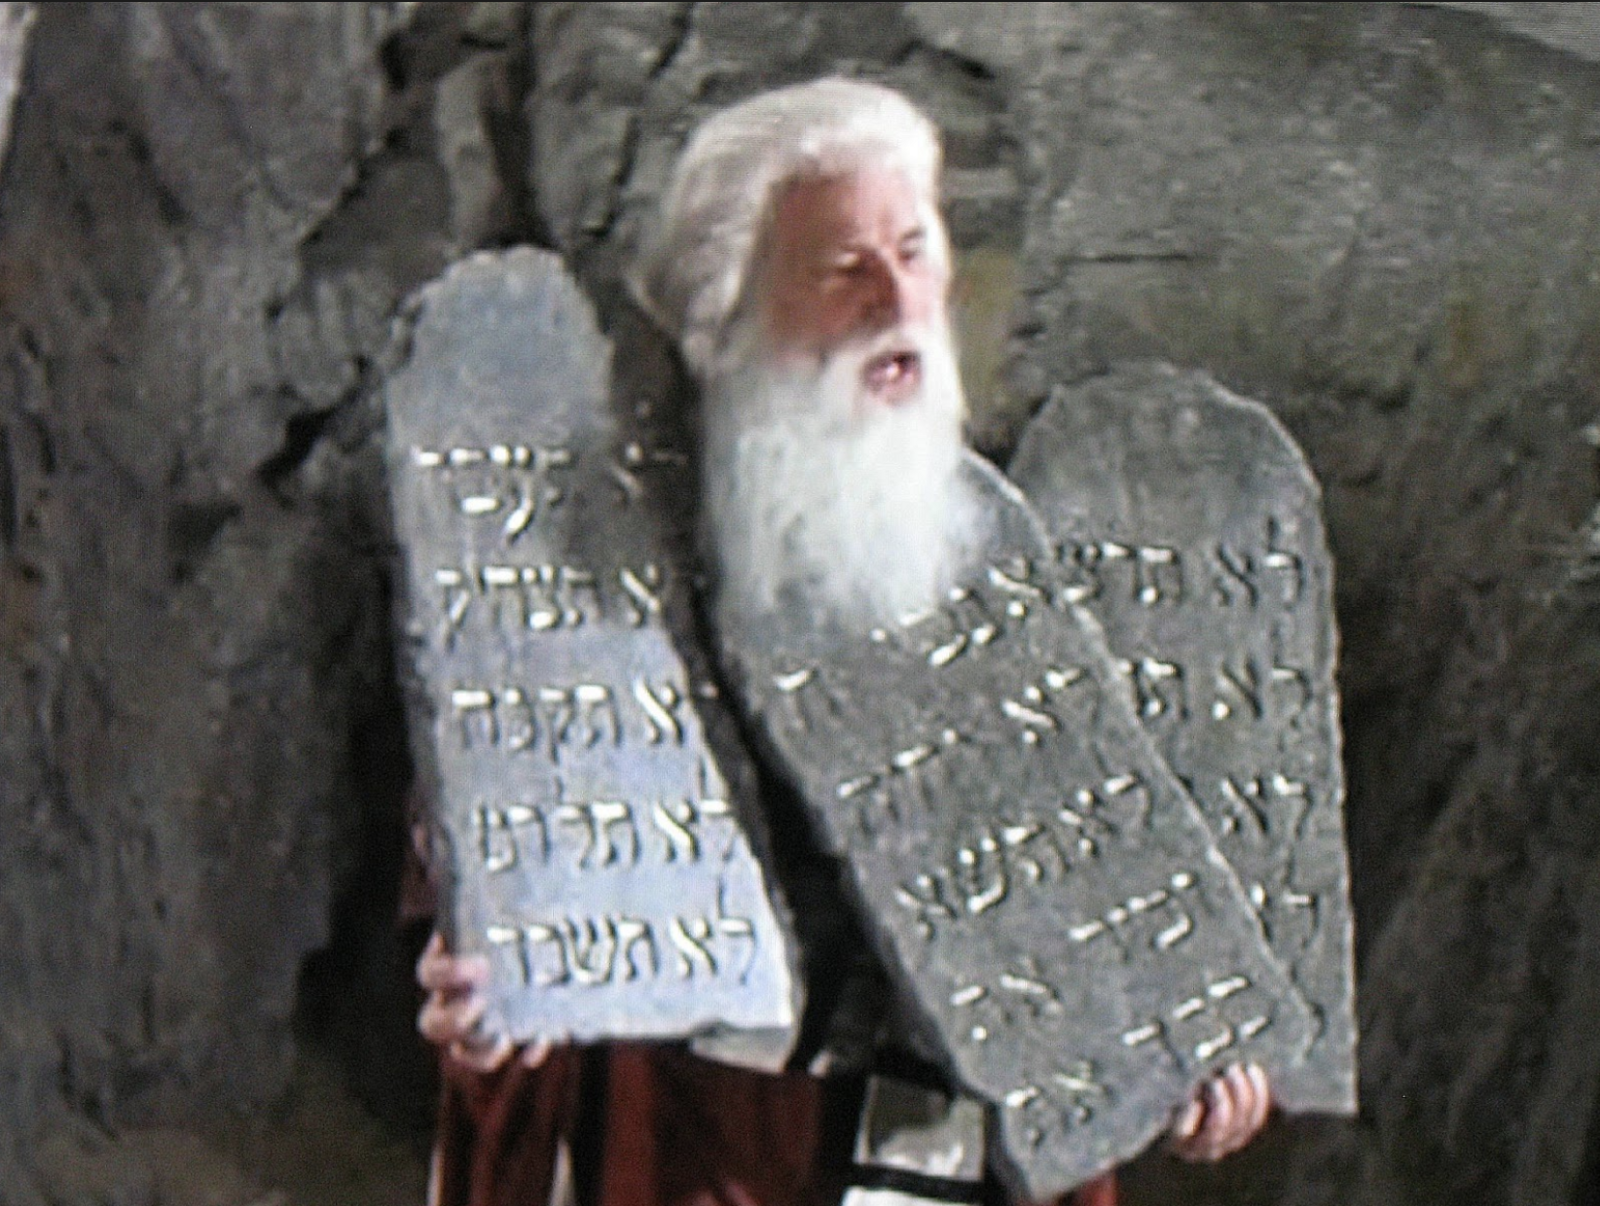 commandments.png